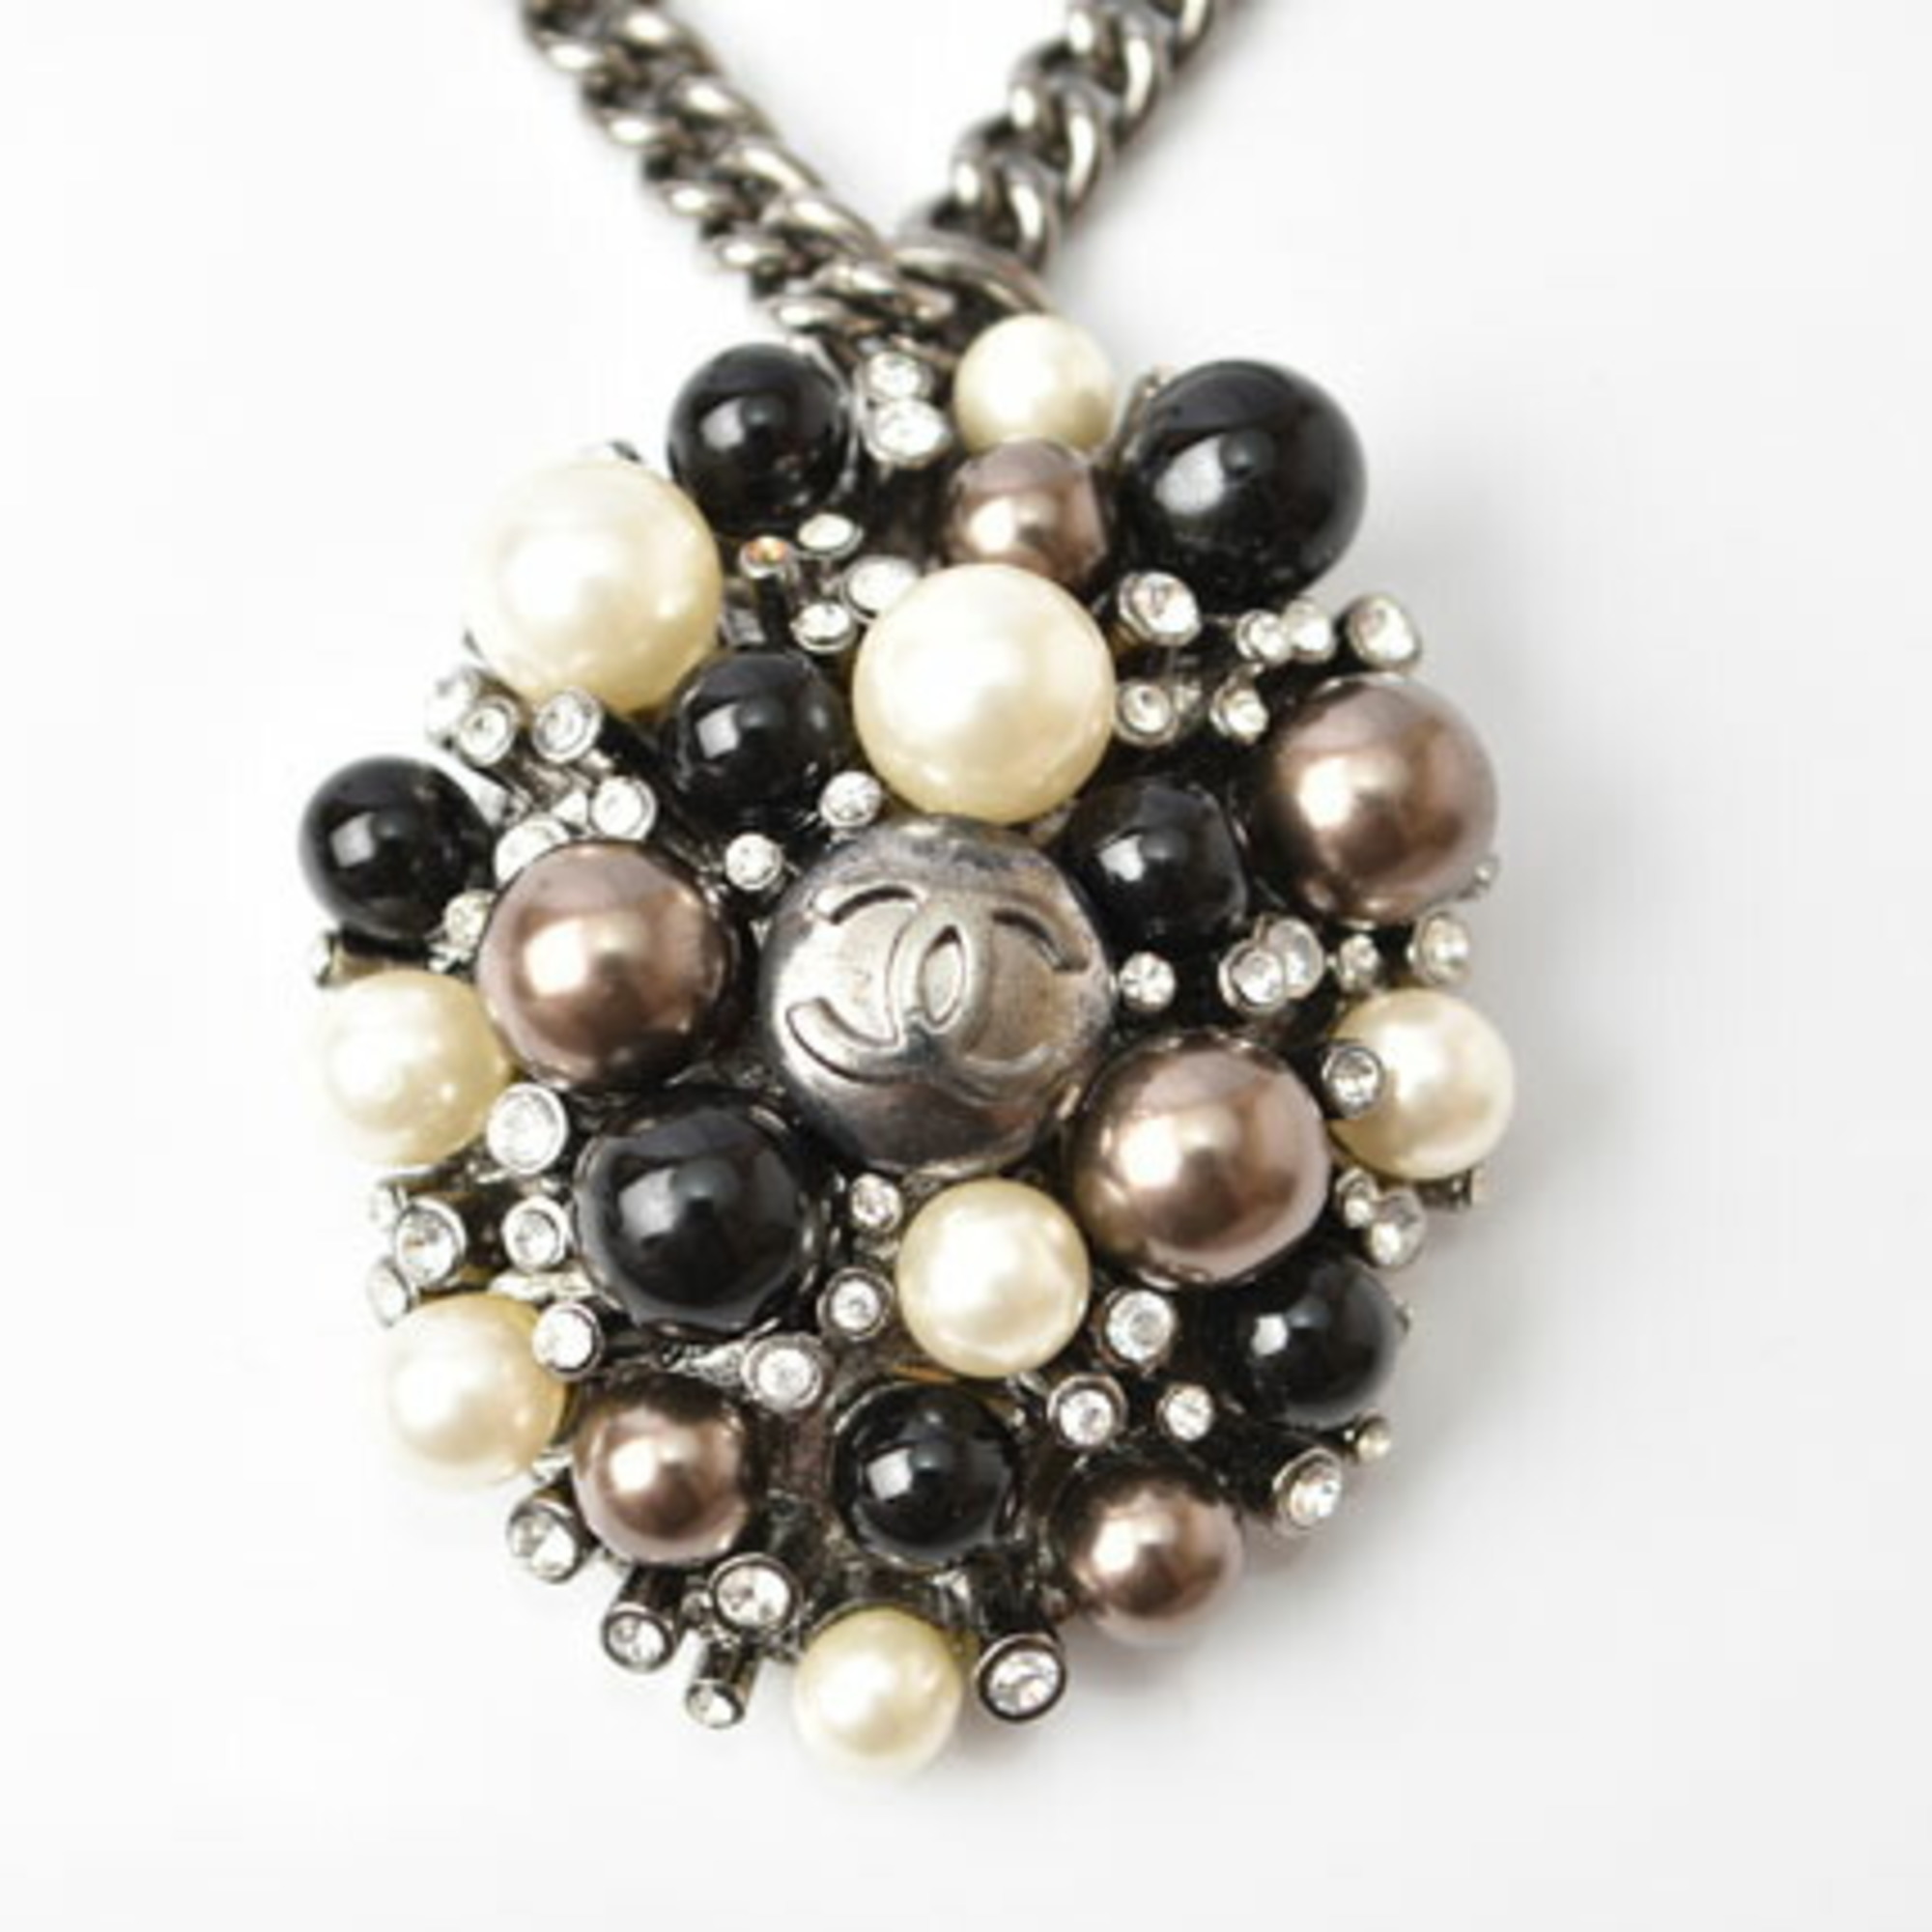 CHANEL necklace pendant CC mark rhinestone pearl black white silver